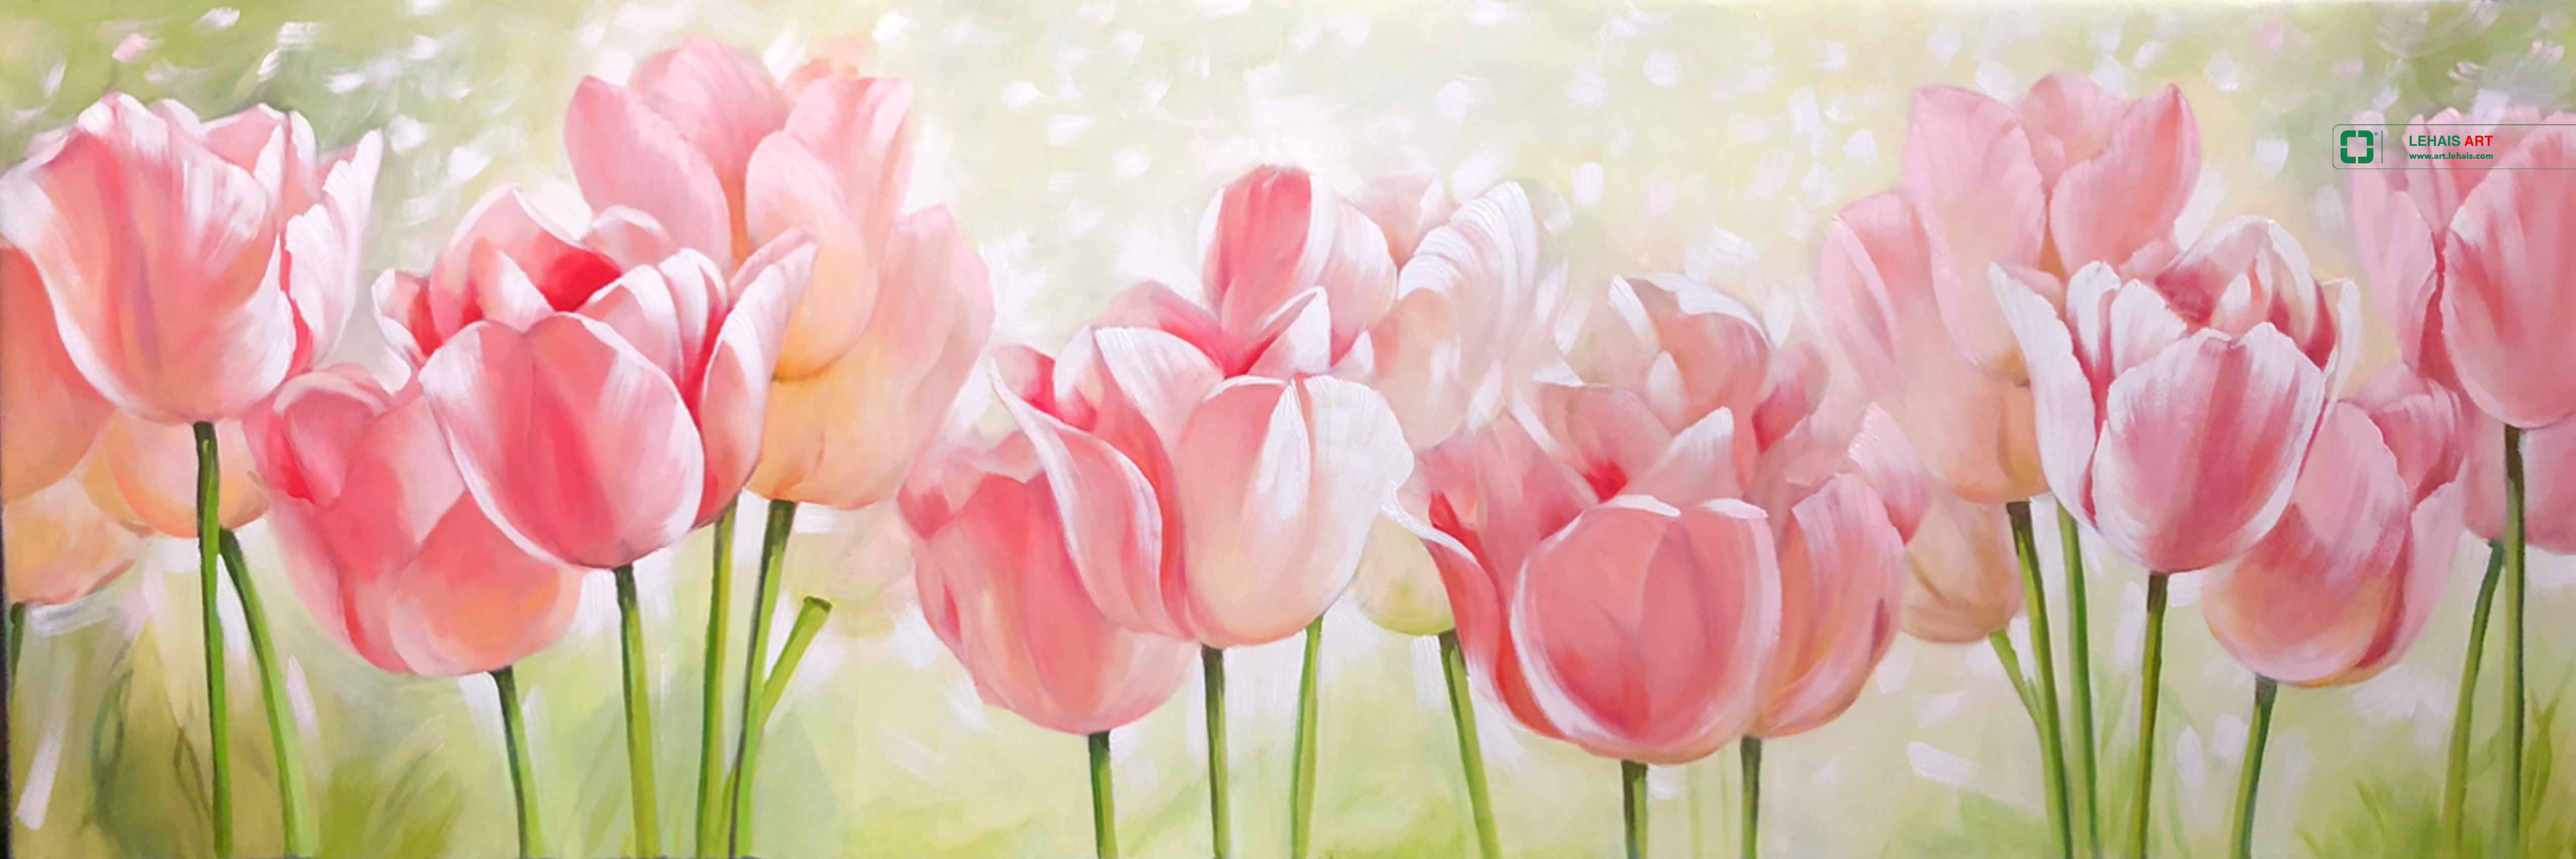 Tranh sơn dầu tĩnh vật hoa Tulip - TSD767LHAR